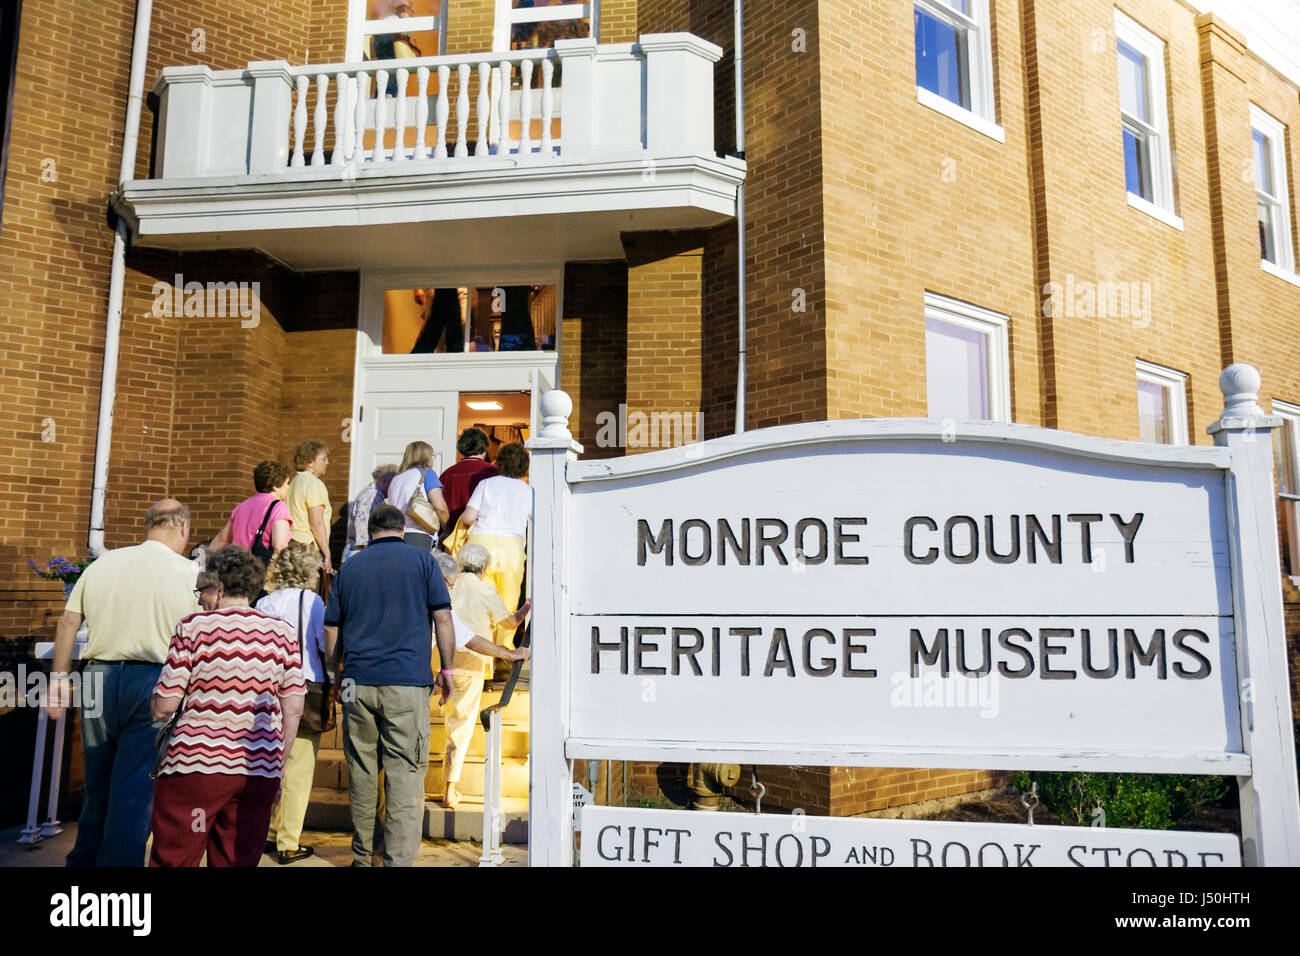 Monroeville Alabama,Courthouse Square,pour tuer un Mockingbird,jouer,Old Monroe County Courthouse 1903,audience entre dans la salle d'audience,ACT deux,signe,Heritage Mus Banque D'Images